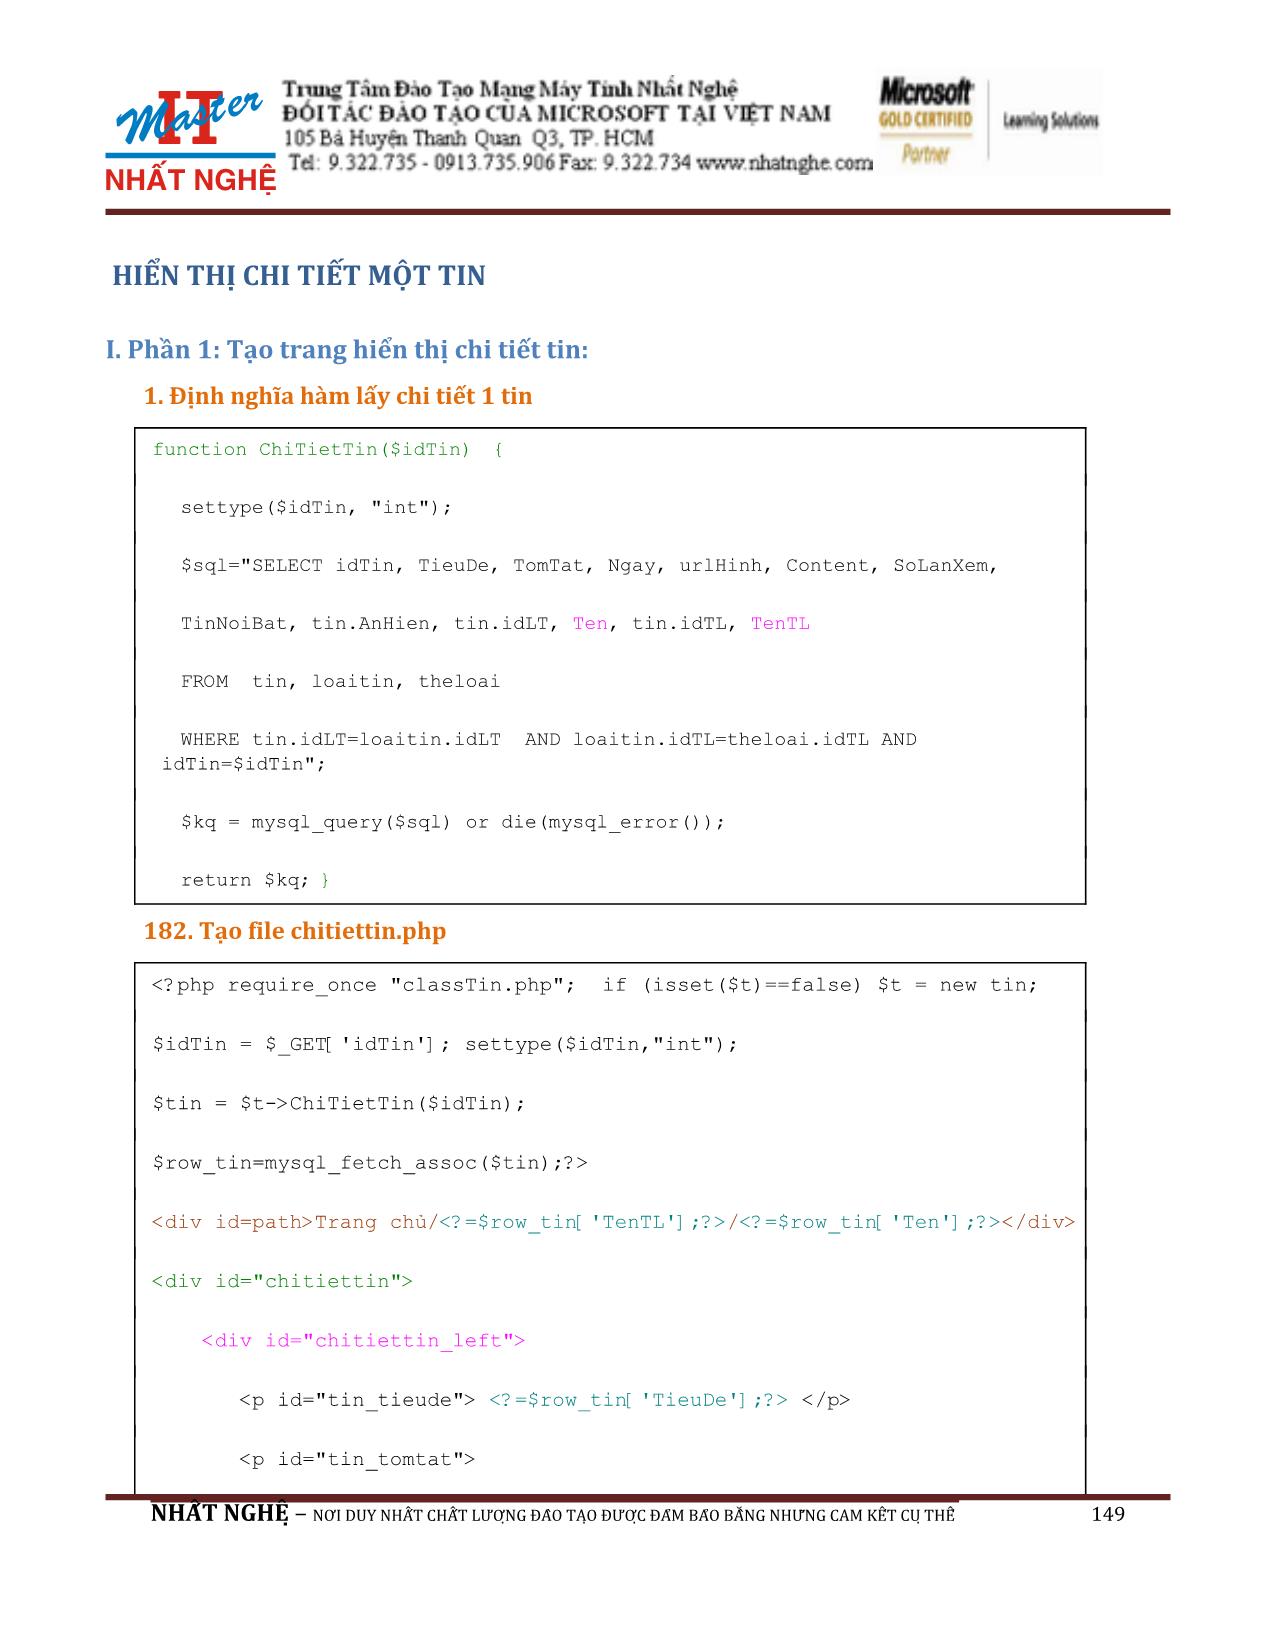 Giáo trình Hướng dẫn thiết kế Web PHP và MySQL (Phần 2) trang 1